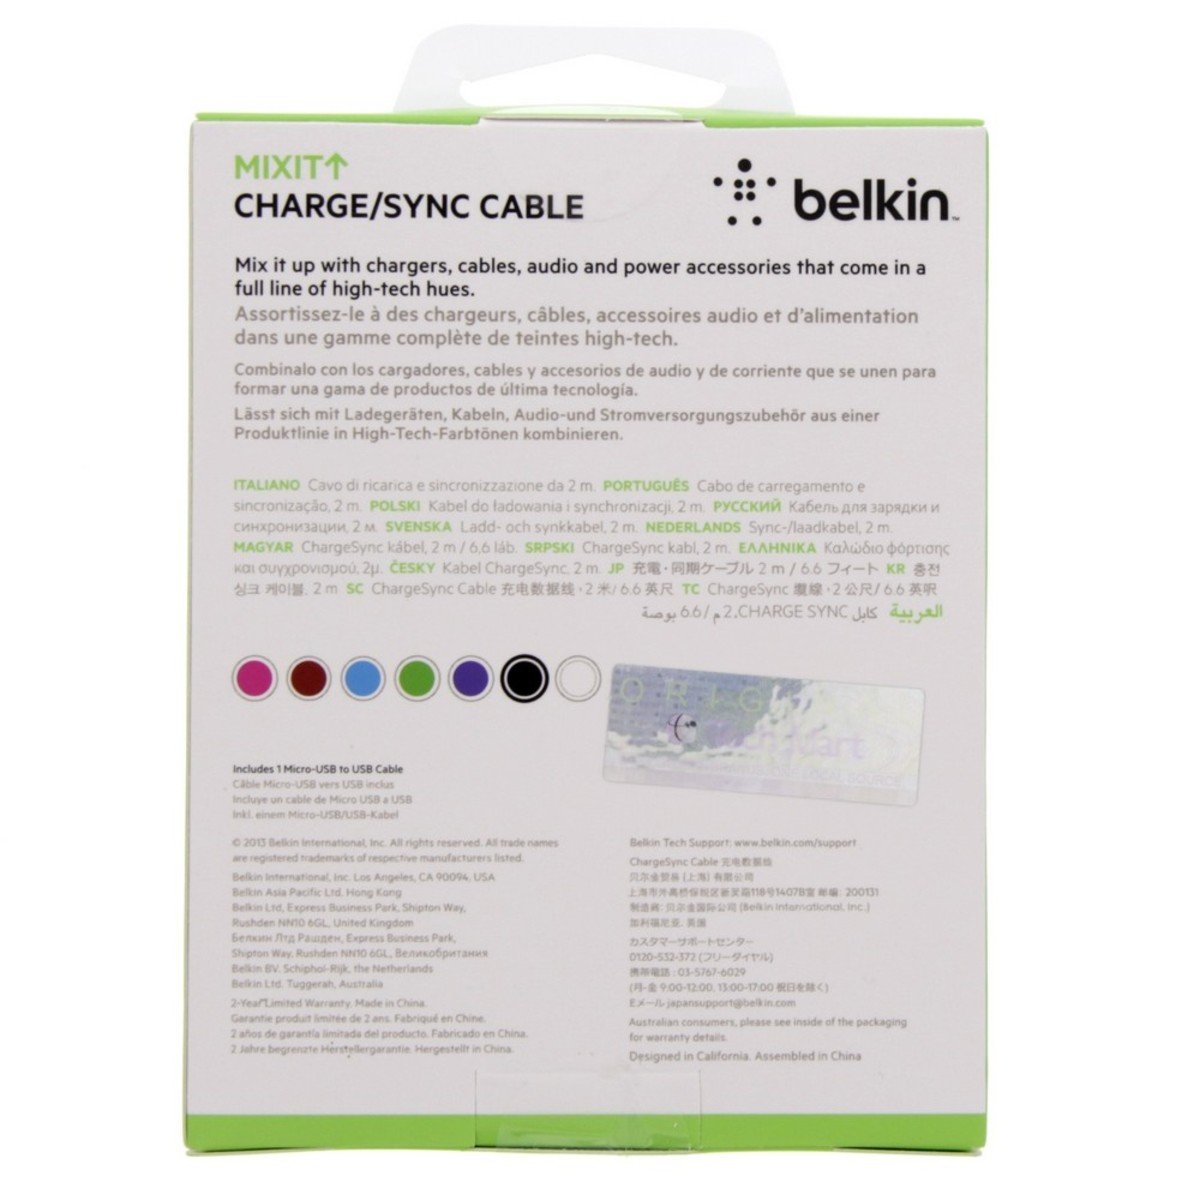 Belkin Micro USB Cable F2CU012BT 2M